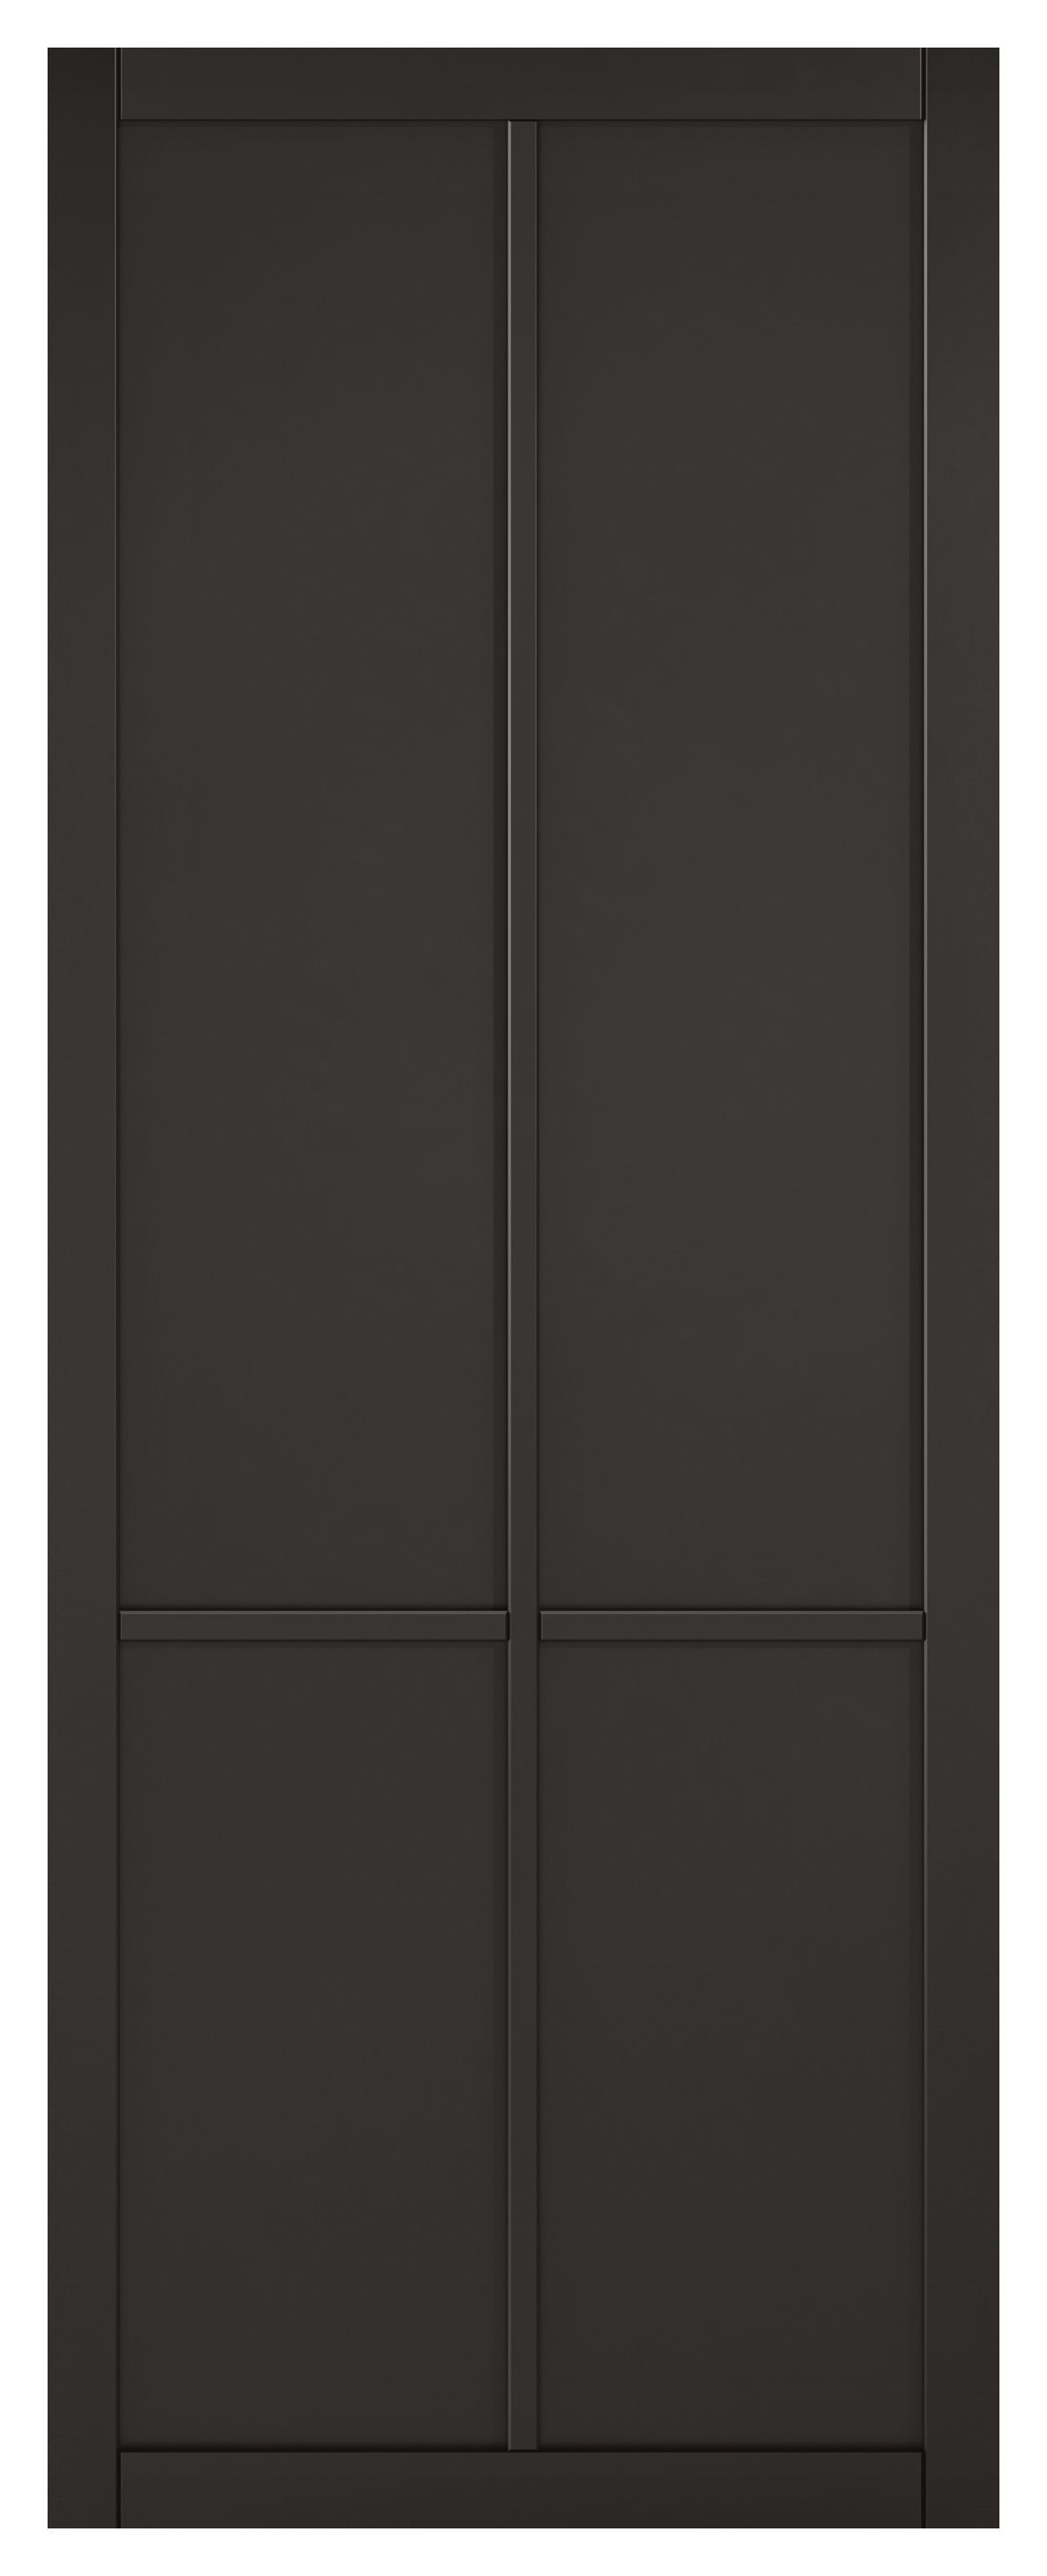 Image of LPD Internal Liberty 4 Panel Primed Black Solid Core Door - 762 x 1981mm